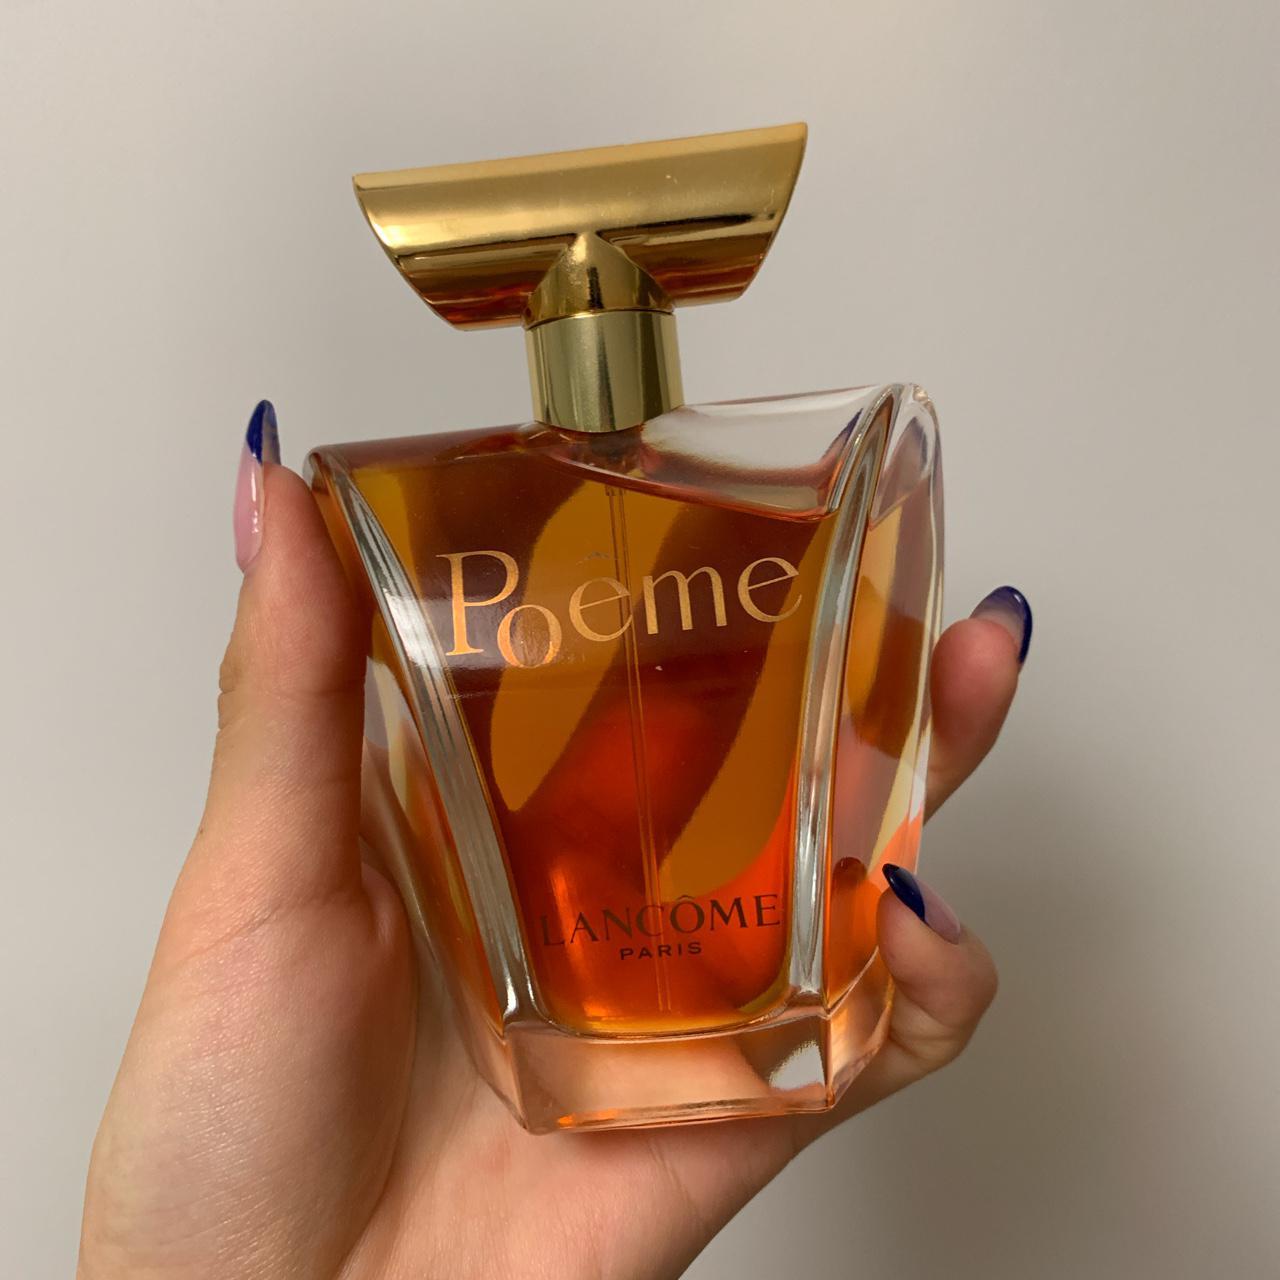 Tweet Monografie Toelating Lancôme Poême EAU DE PARFUM 100ML perfume Brand... - Depop